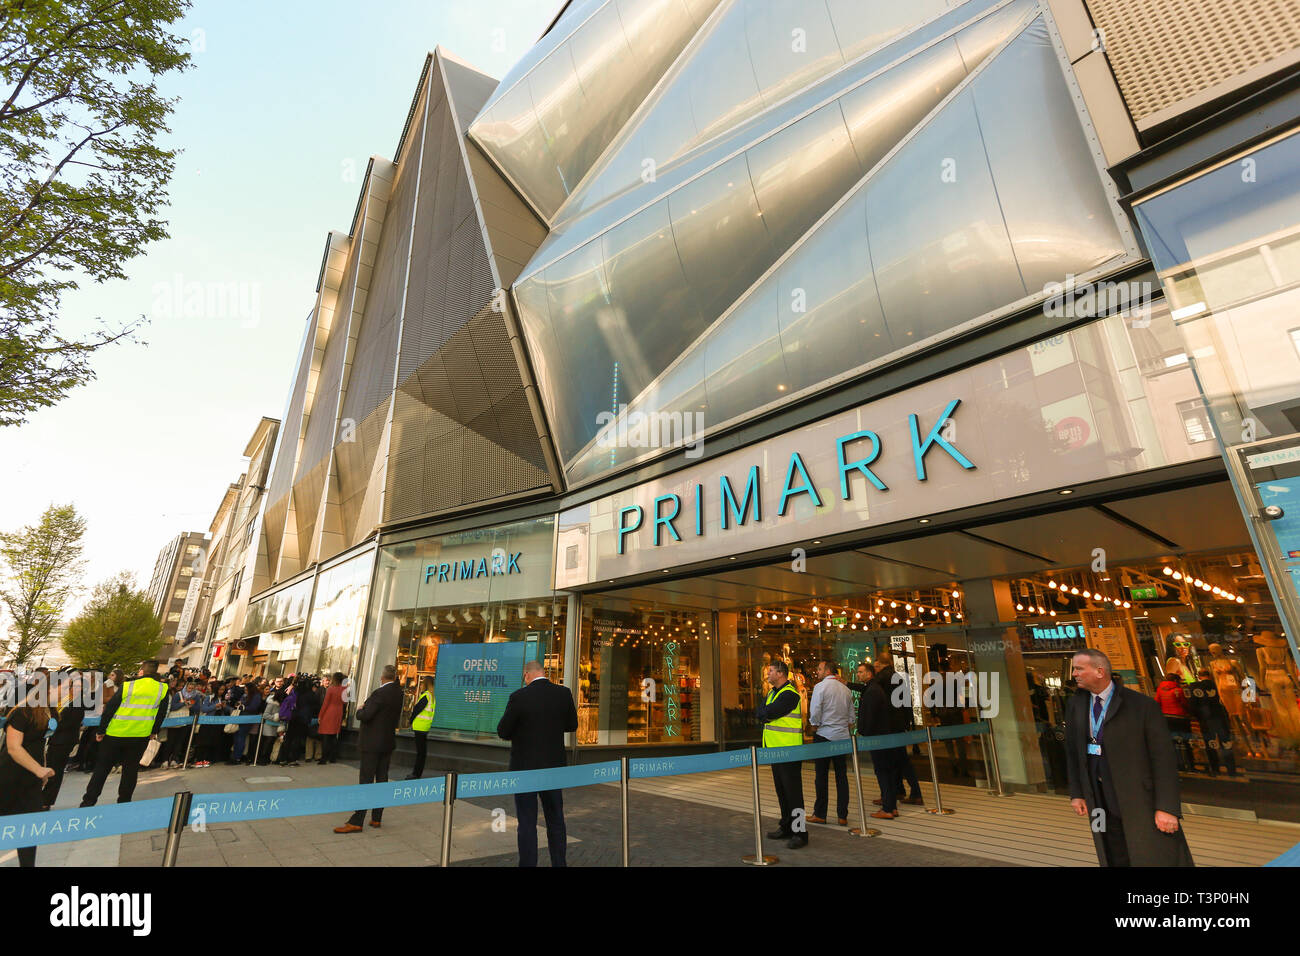 Birmingham, Reino Unido. 11 abr, 2019. El Primark más grande del mundo abre la tienda hoy en Birmingham, como clientes cola para entrar. Crédito: Peter Lopeman/Alamy Live News Foto de stock